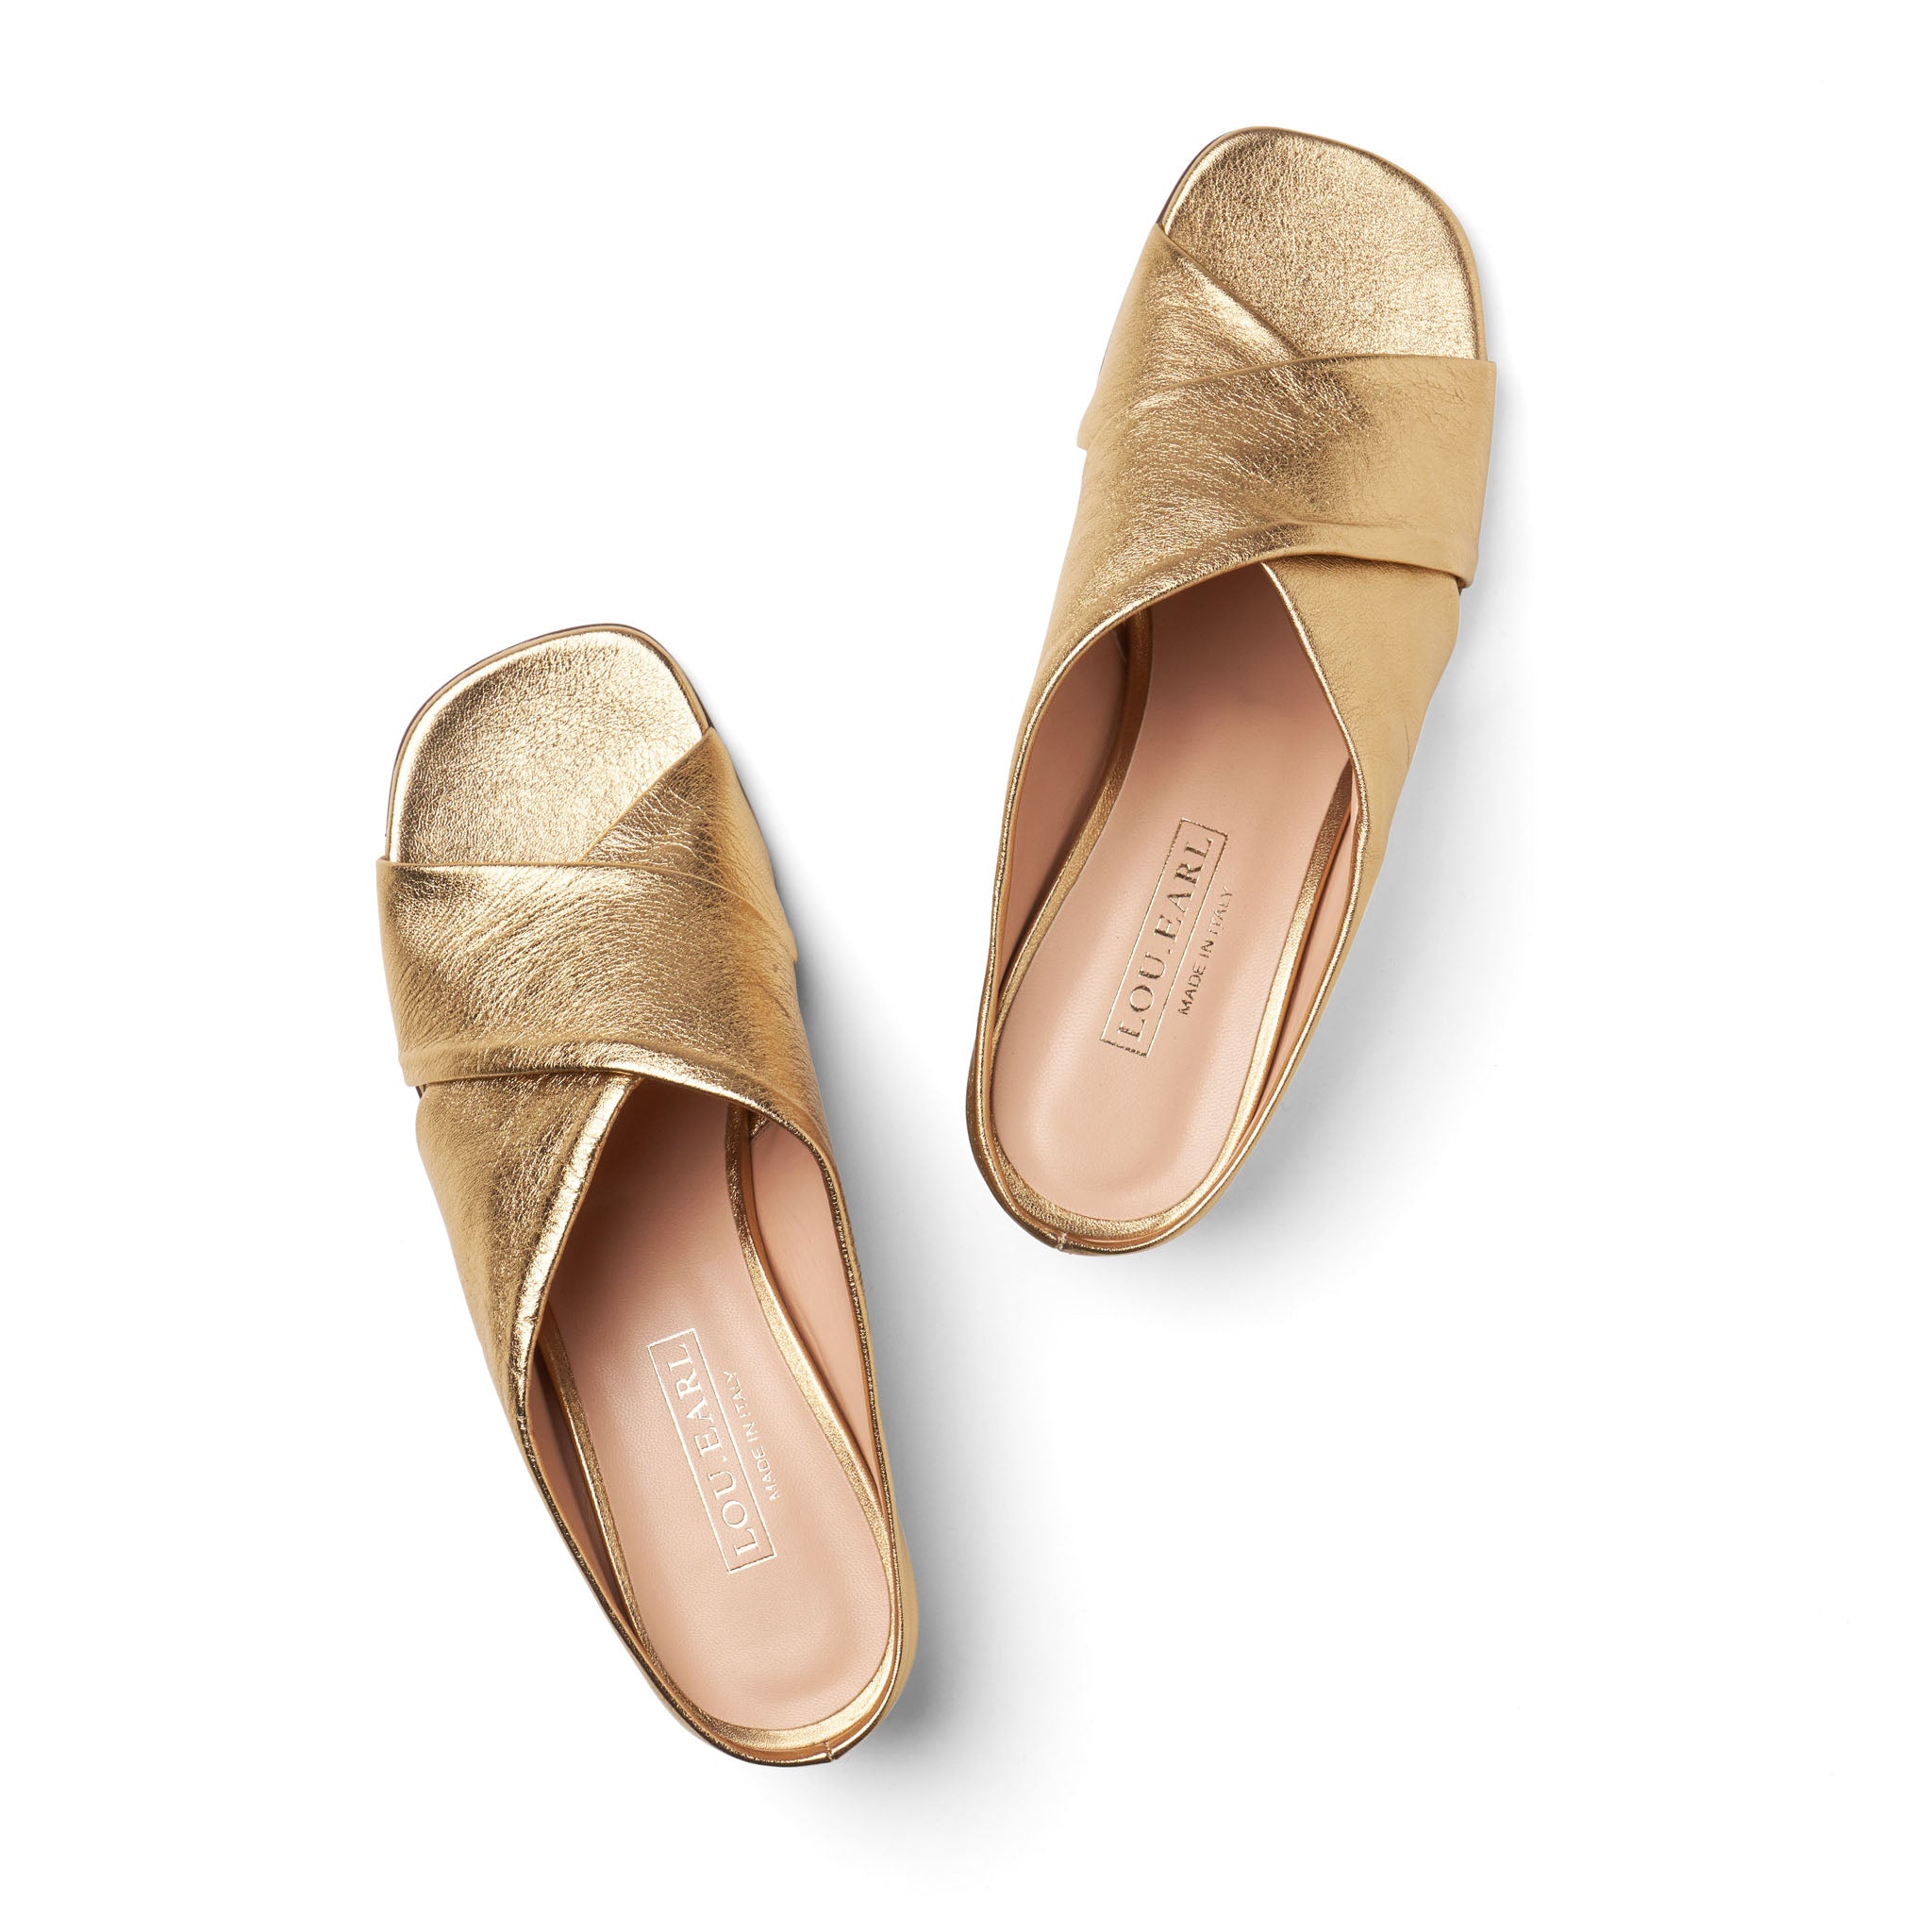 Gold criss cross heeled sandals open toe calfskin